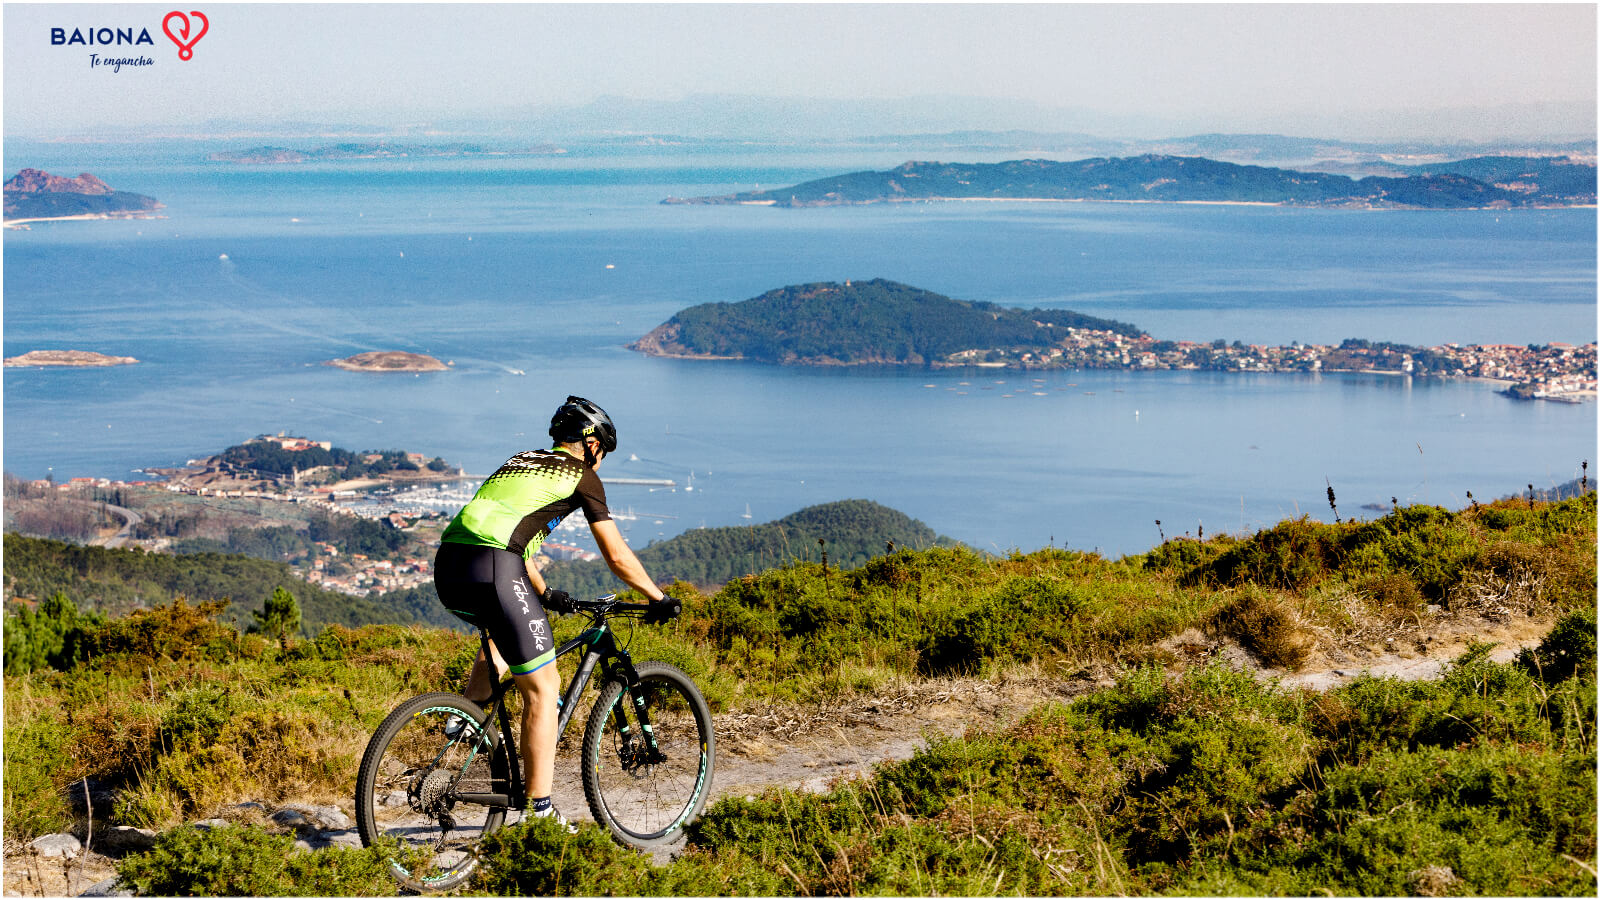 10 Mejores cosas que hacer en Baiona, Galicia, España - 3. E-Biking in Monte A Groba Hill